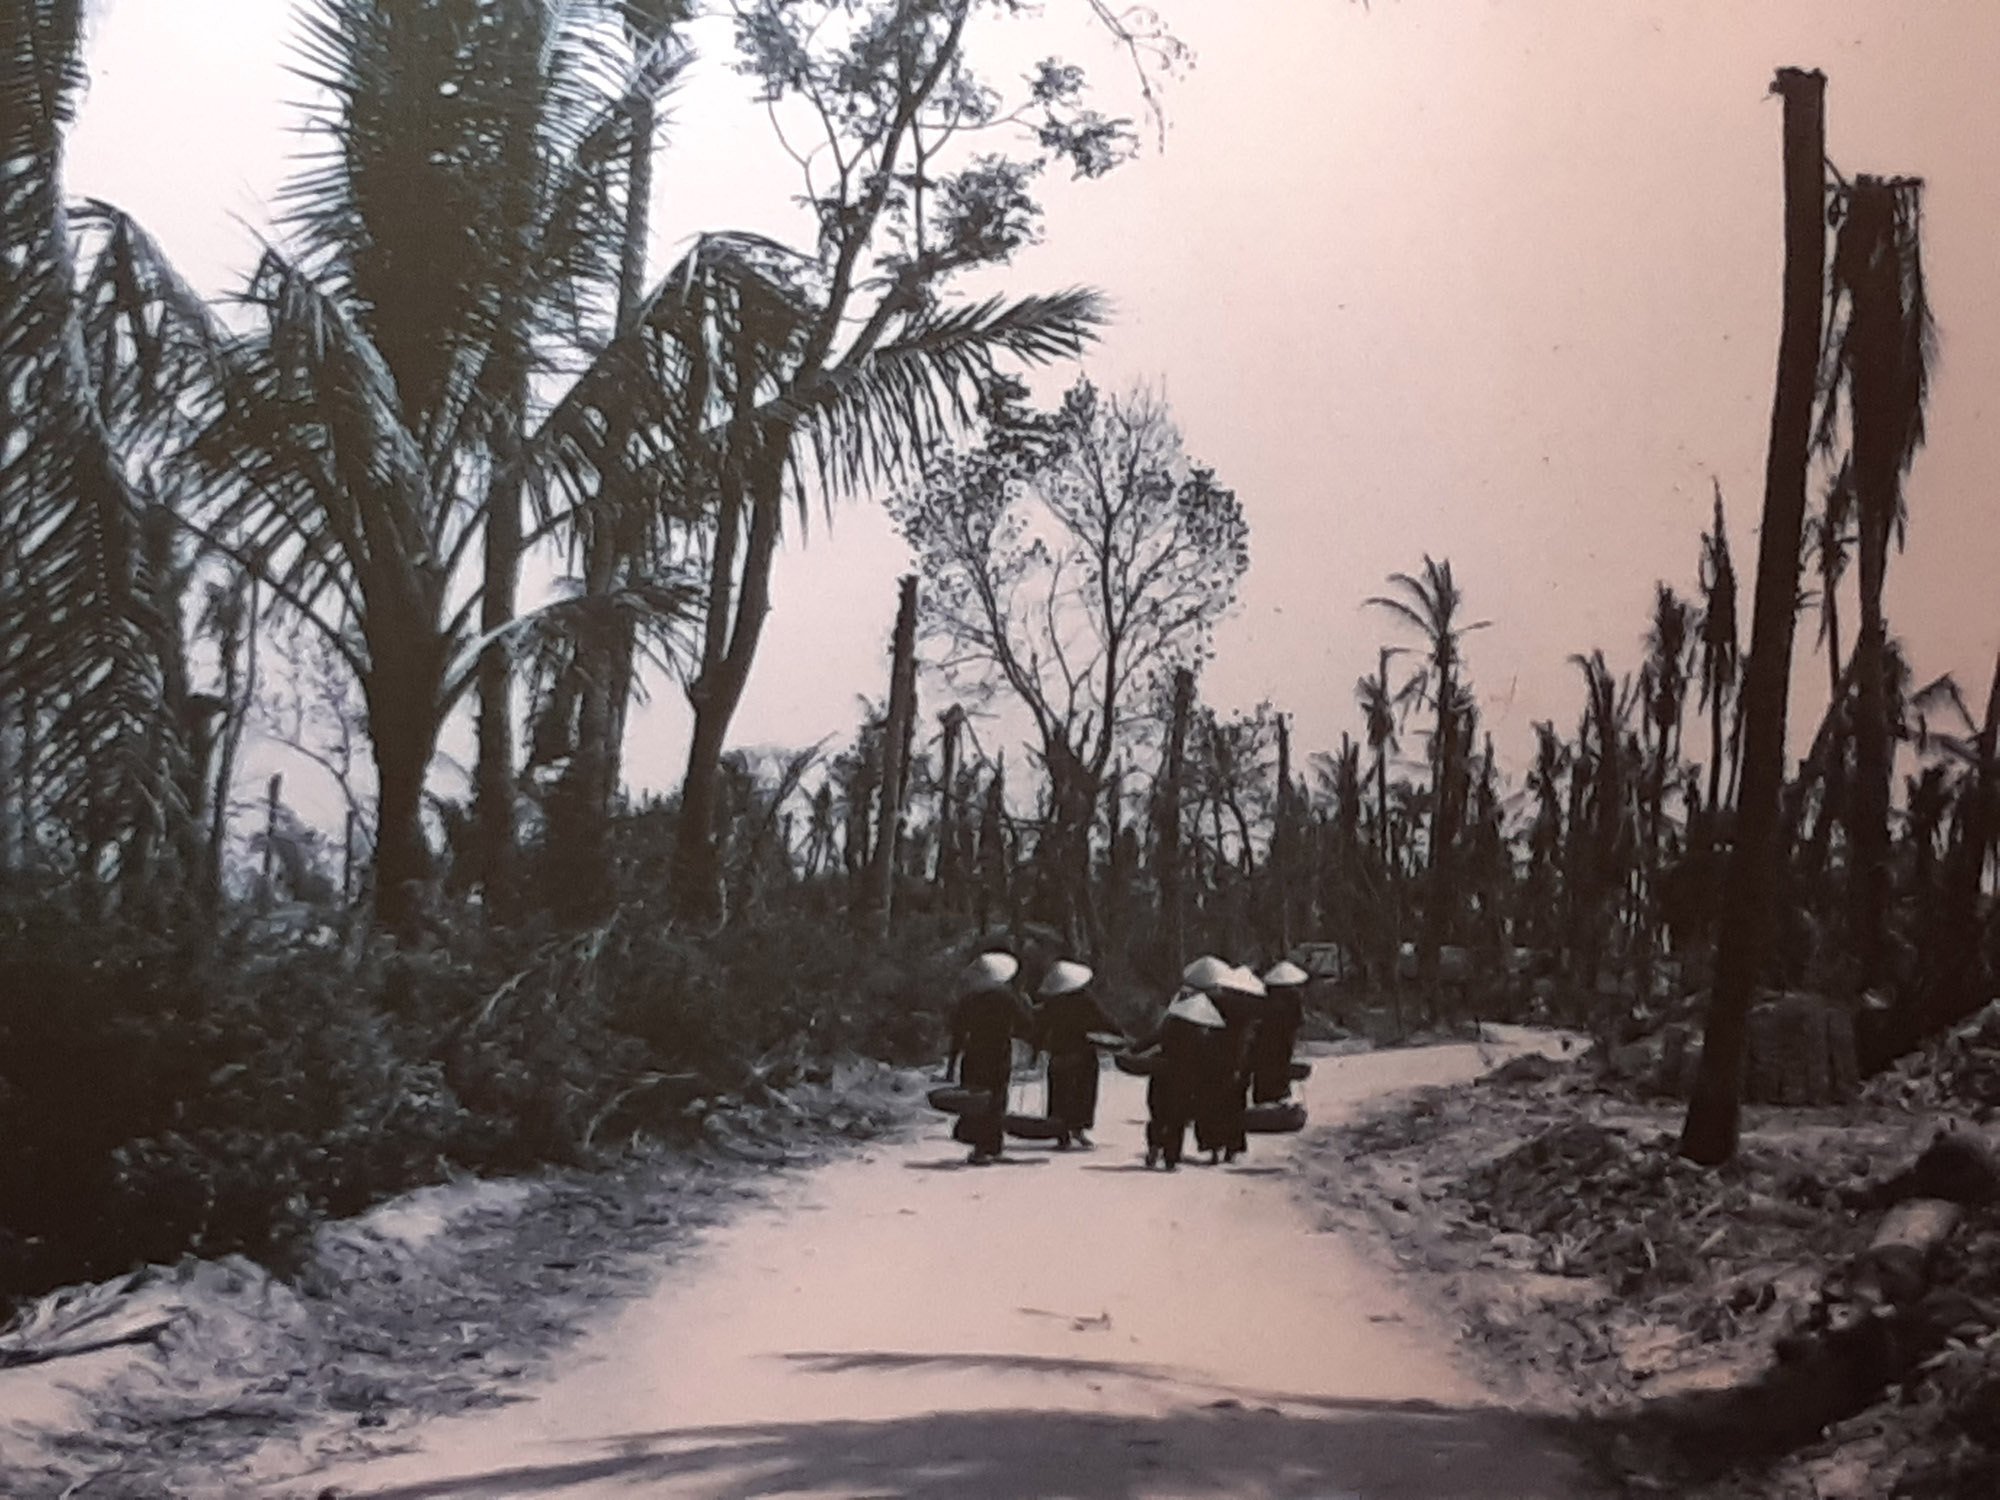 La selva, arrasada per l'agent taronja. Museu de la Guerra a Ciutat Ho Chi Minh (Saigon) (fotografia: Xavier Montanyà).